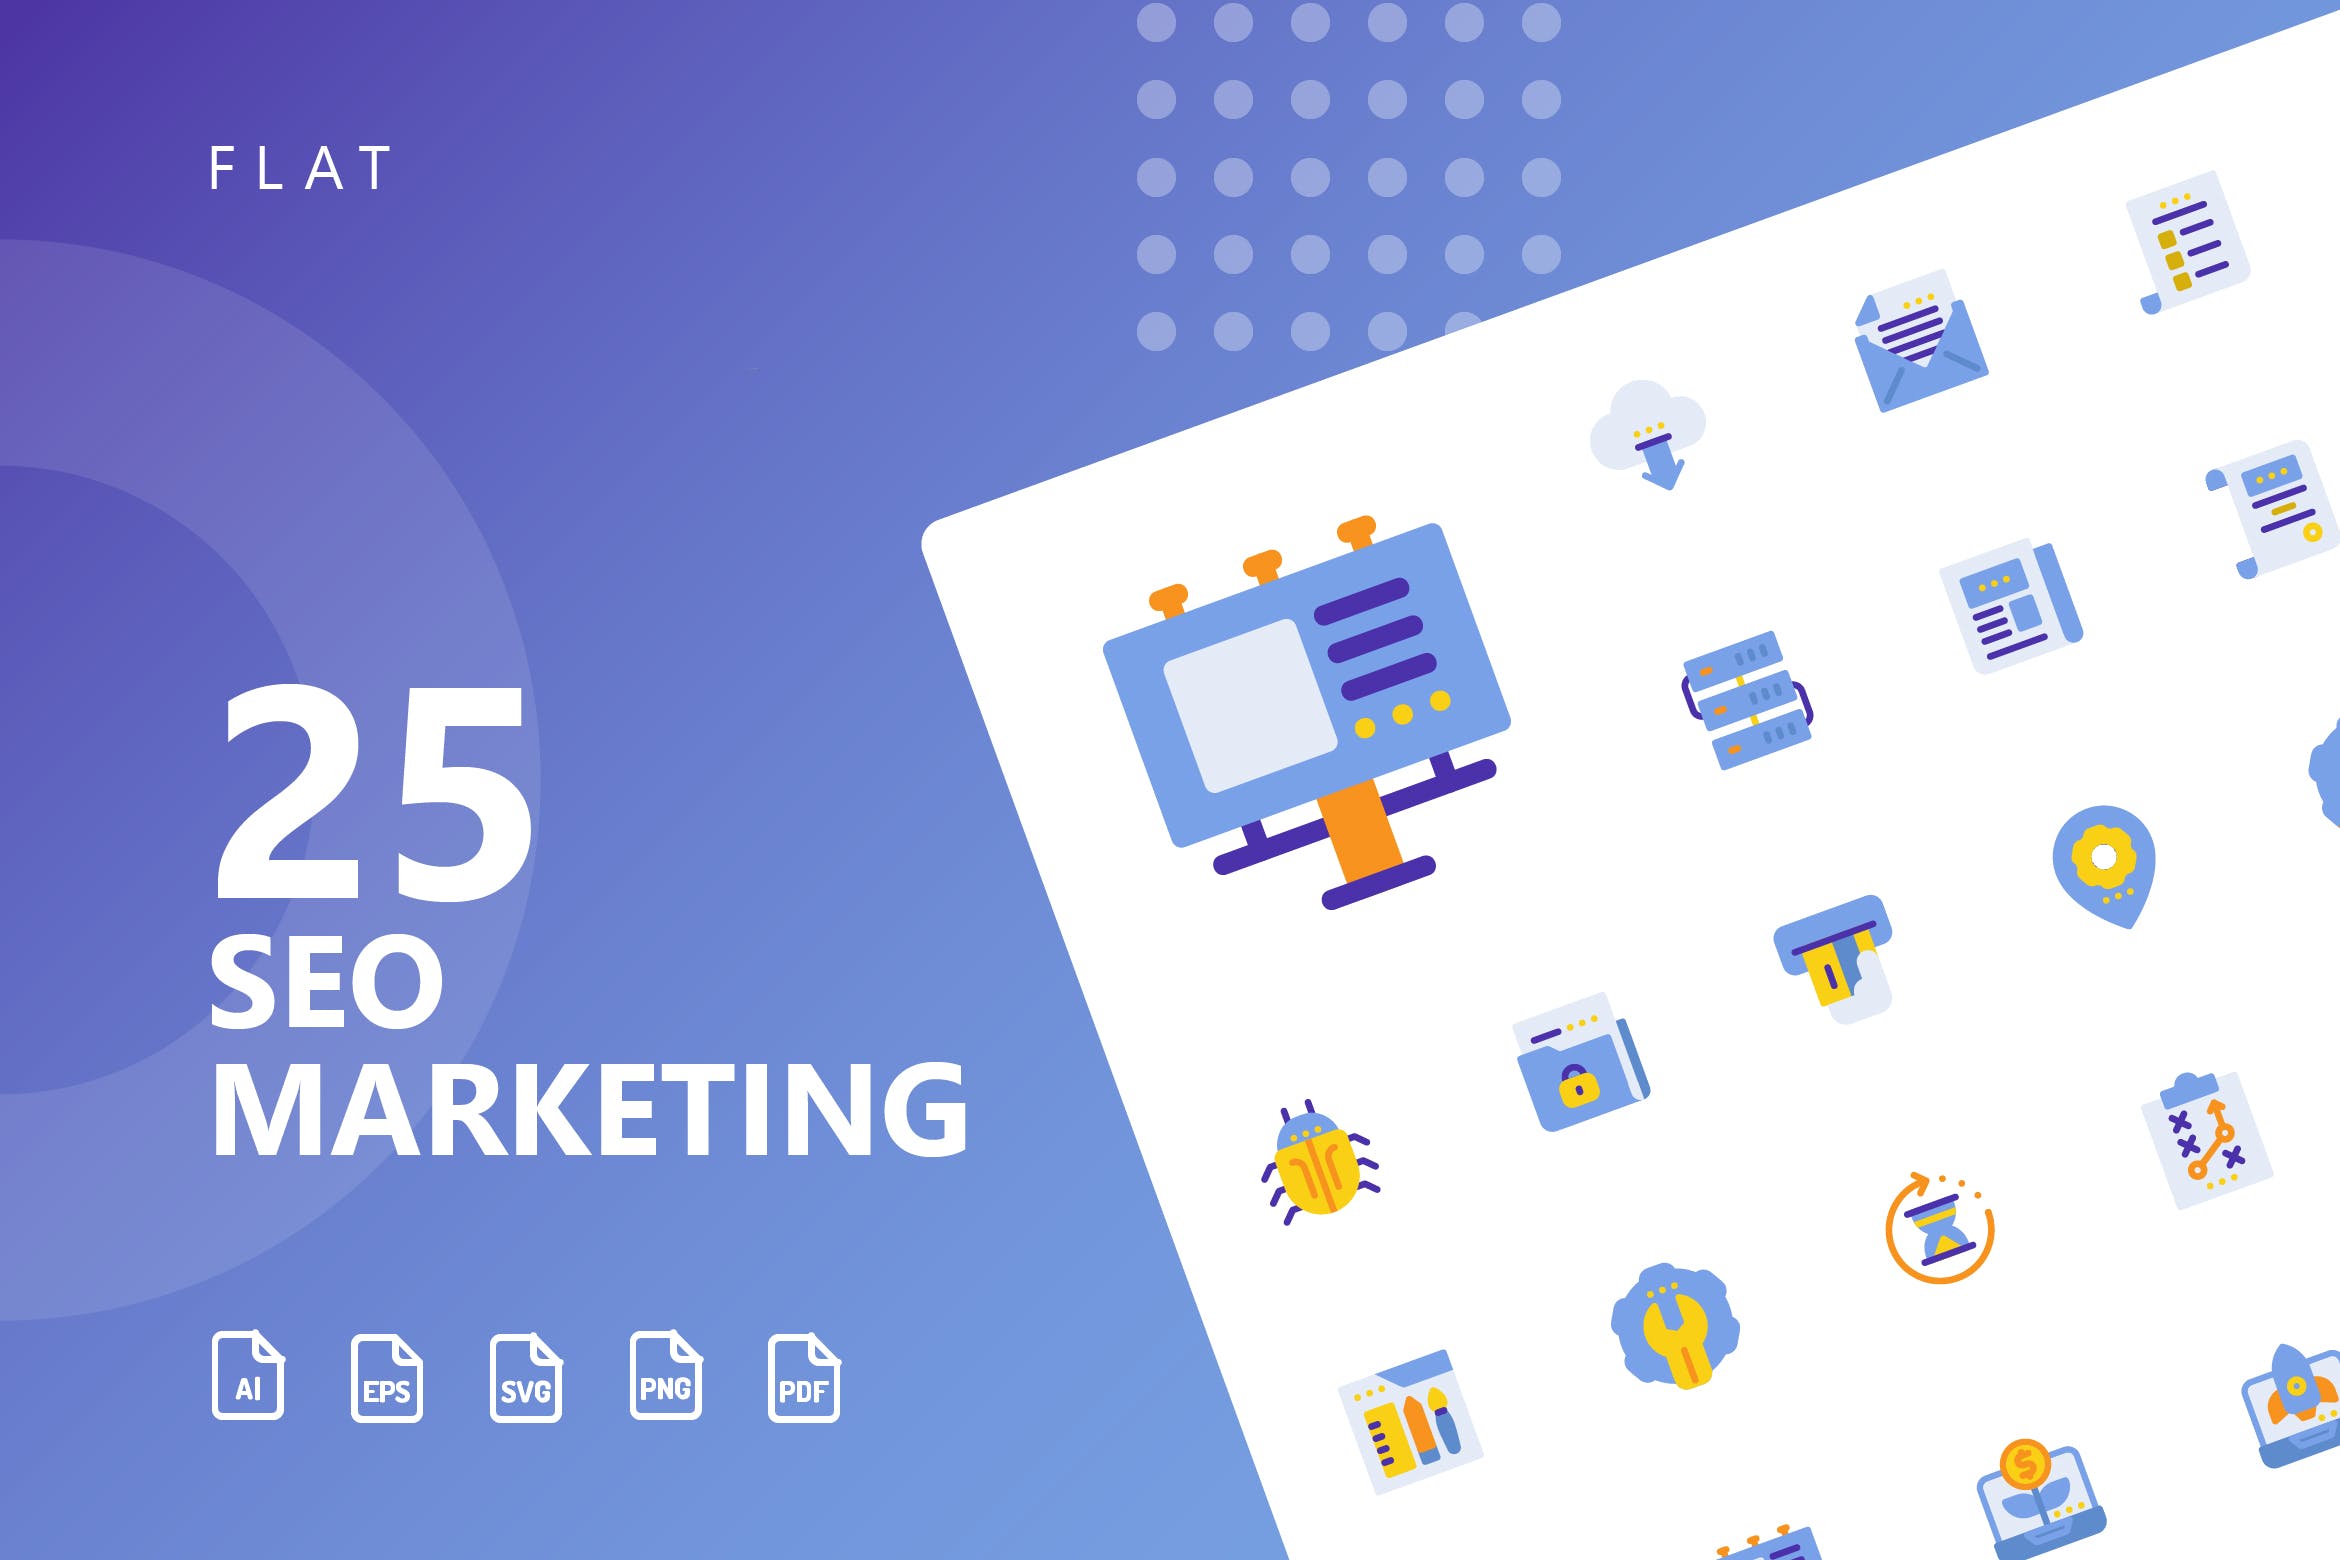 25枚SEO搜索引擎优化营销扁平化矢量素材库精选图标v1 SEO Marketing Flat Icons插图